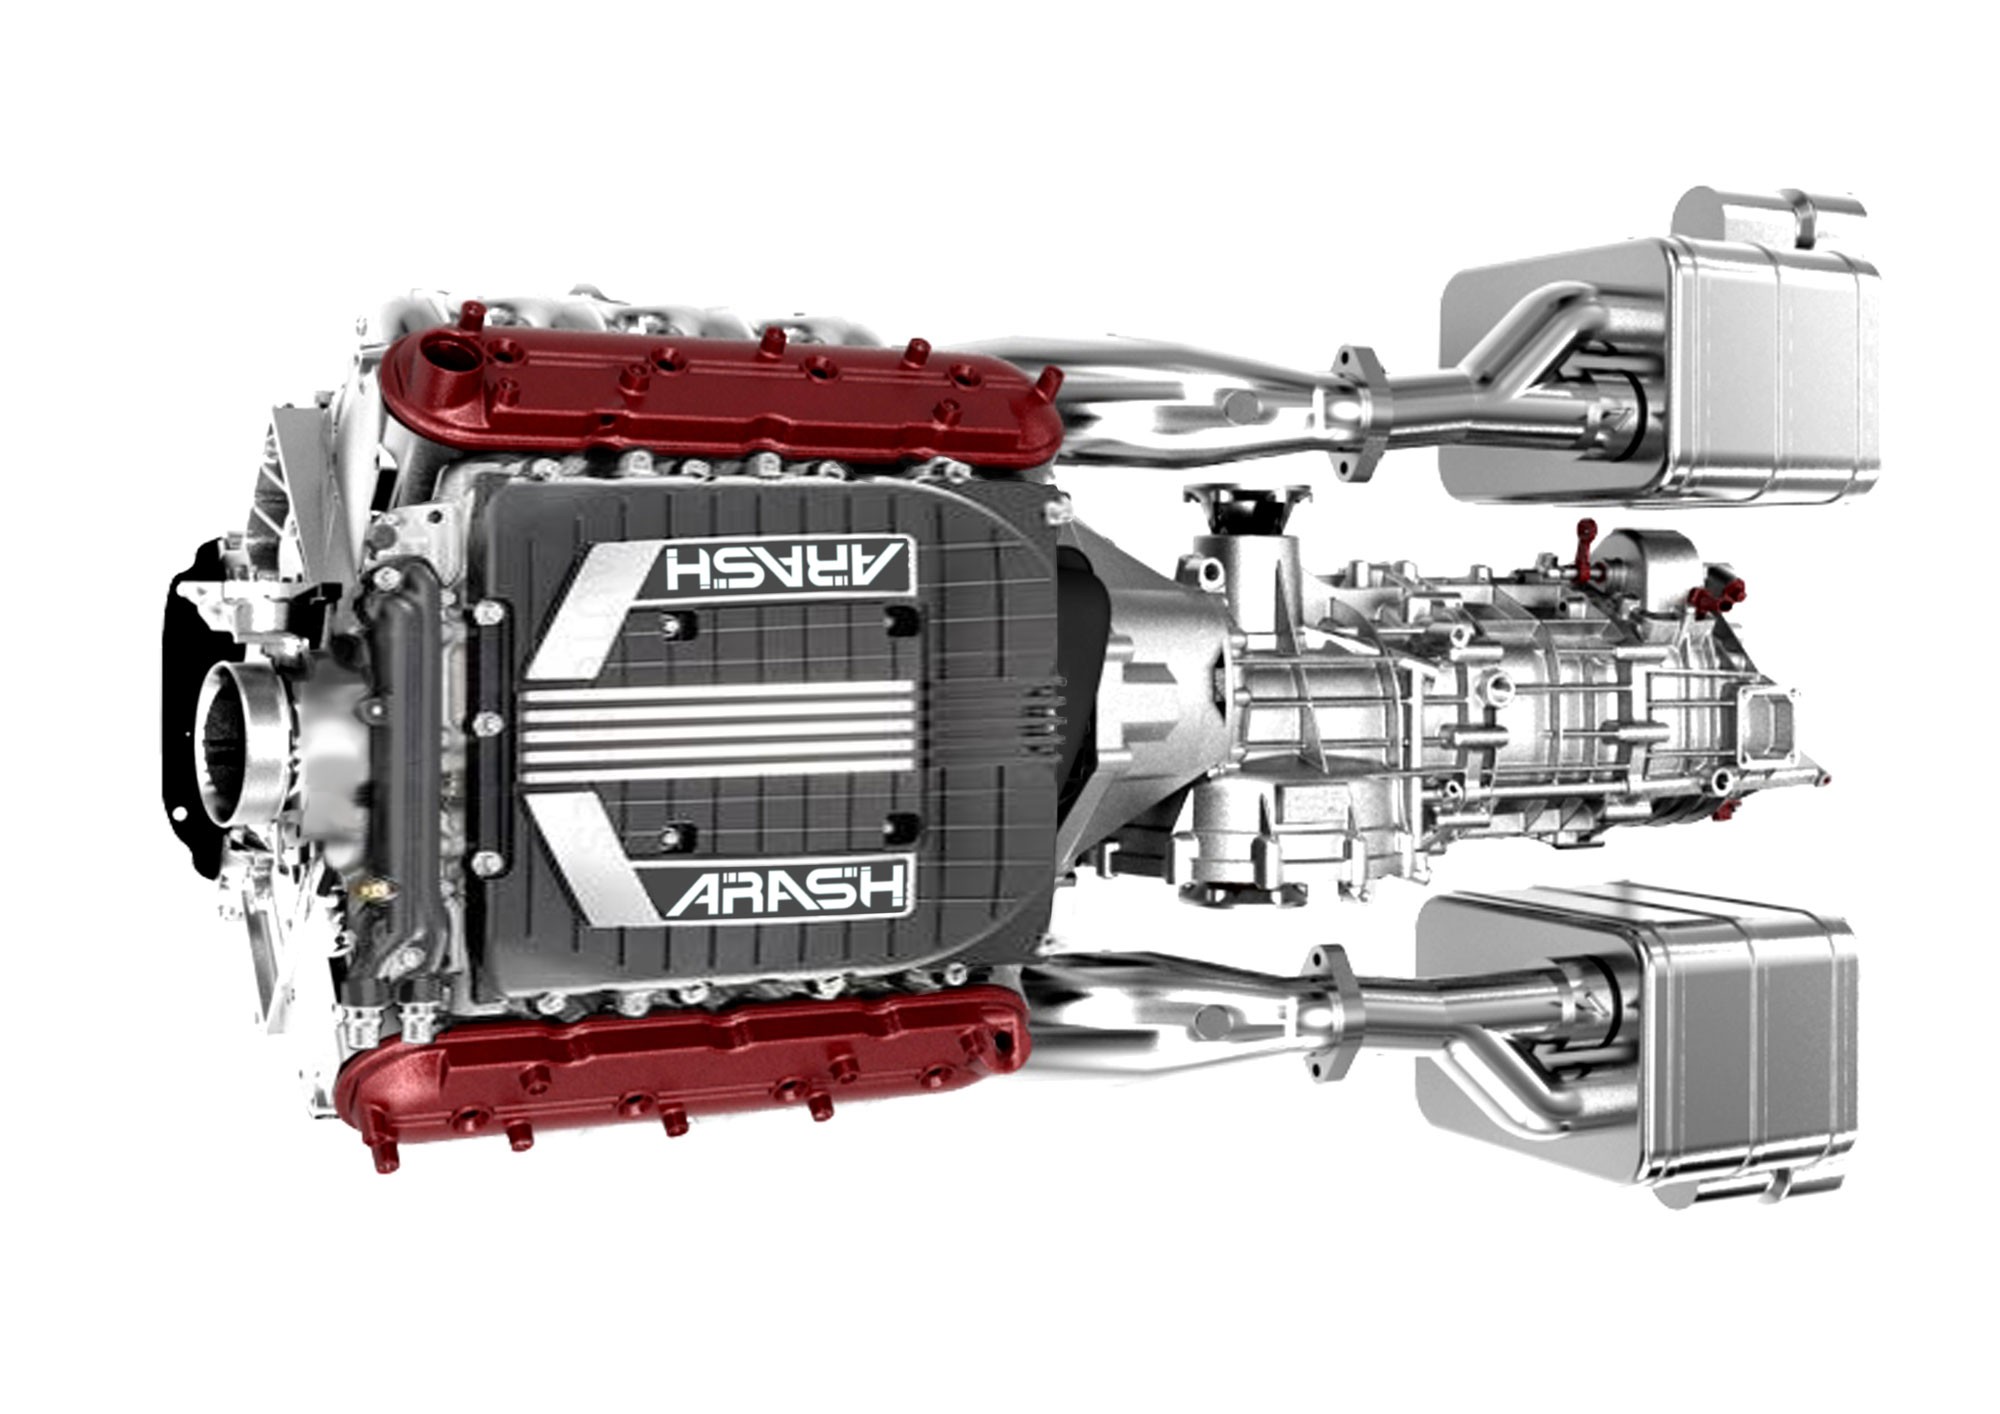 Двигатель 7 л с. Corvette с7 engine. I-Force Max Hybrid engine. Arash Motor Company. Lucid car.